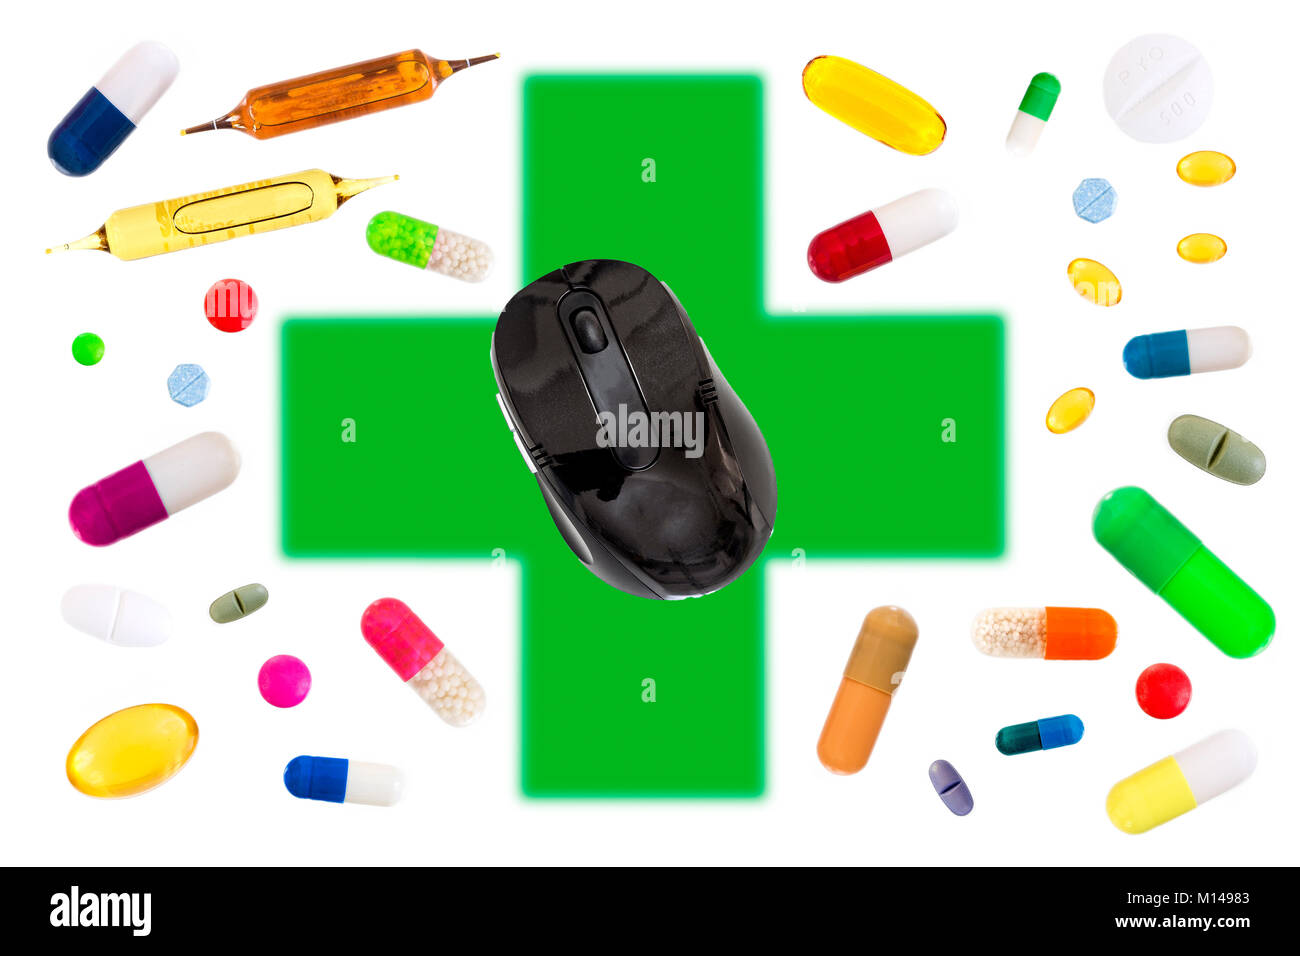 Online Pharmacy concetto con un mouse sulla croce verde con medecine, pillole, capsule, compresse, custodia medicinali su bianco Foto Stock